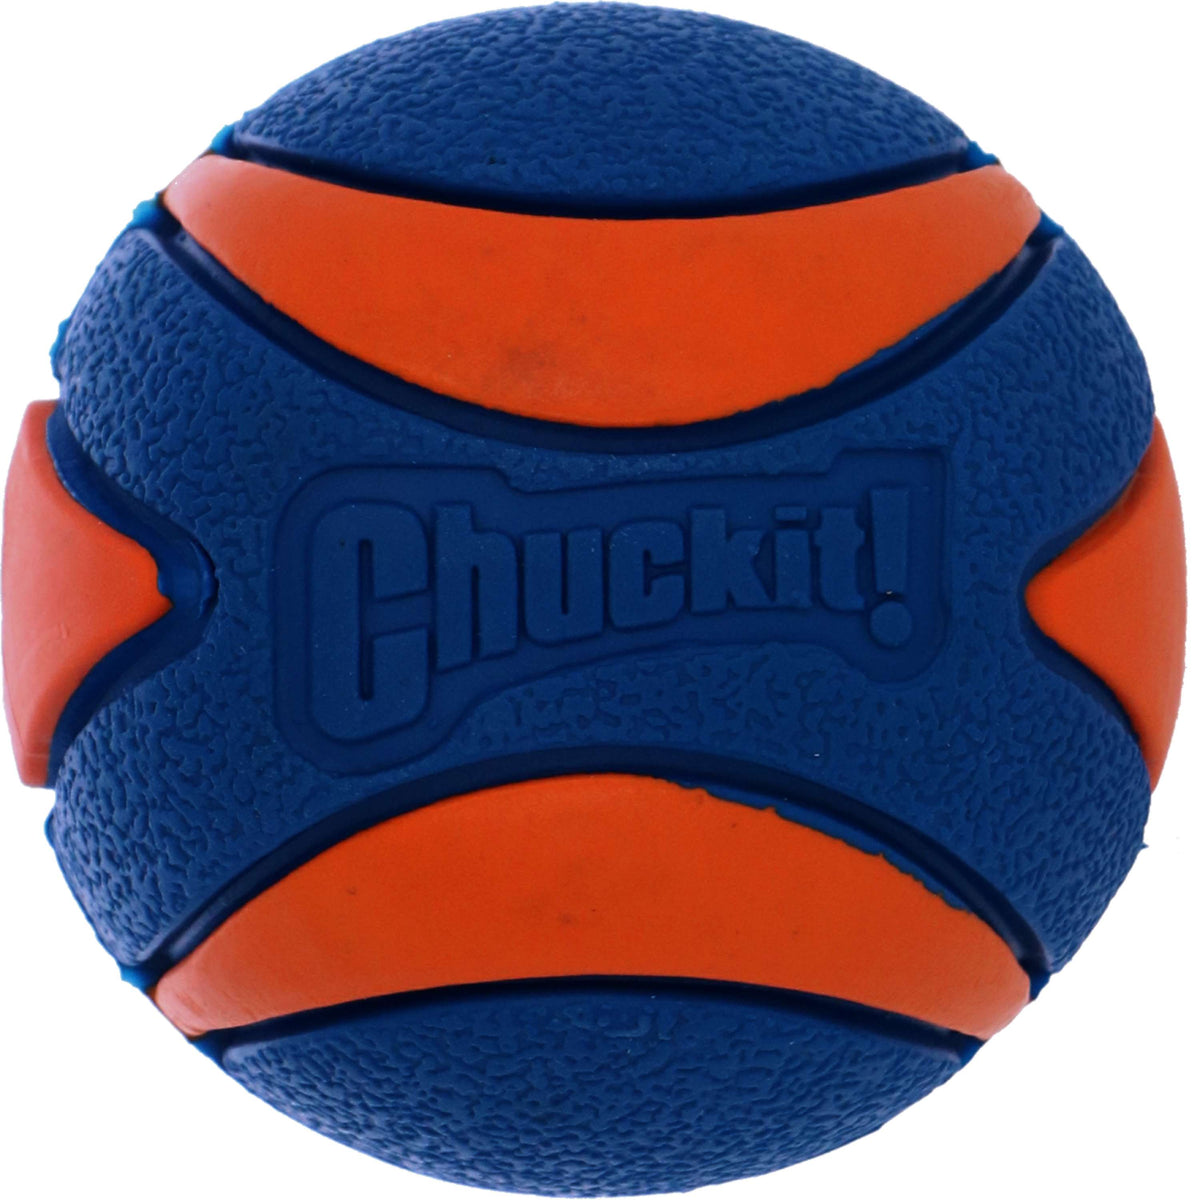 Chuckit Ultra Squeaker Ball